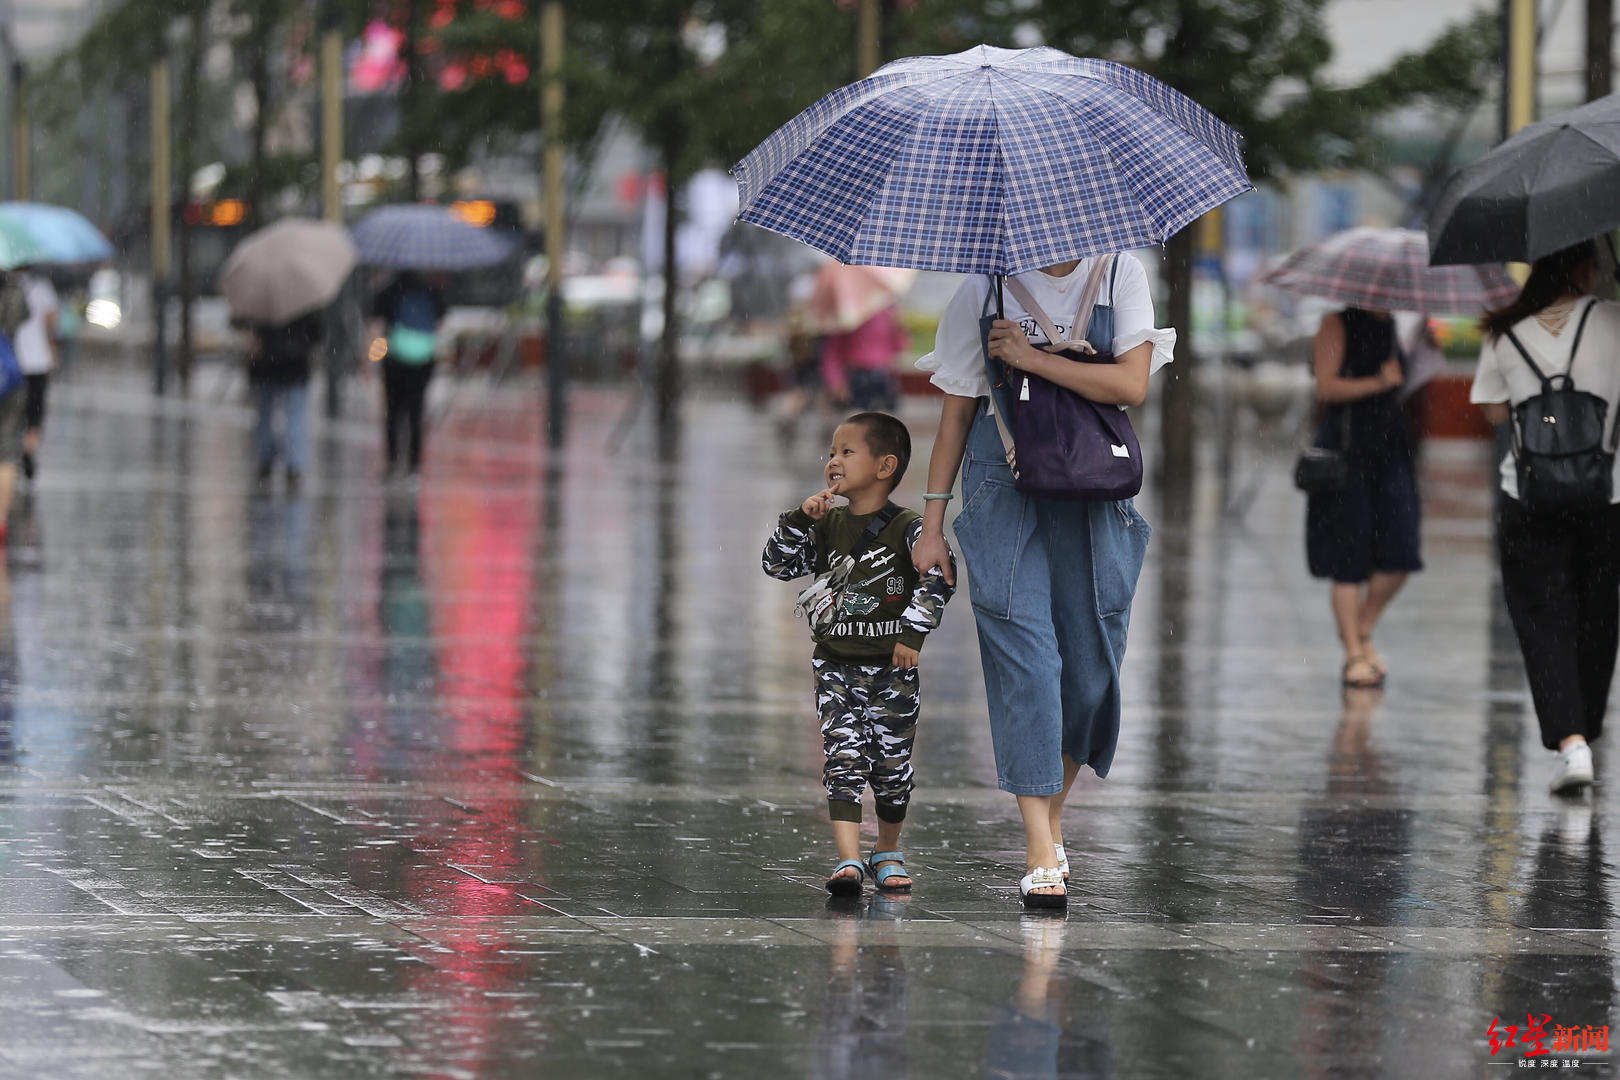 图集丨下雨天,有一种温情叫:我为你撑伞